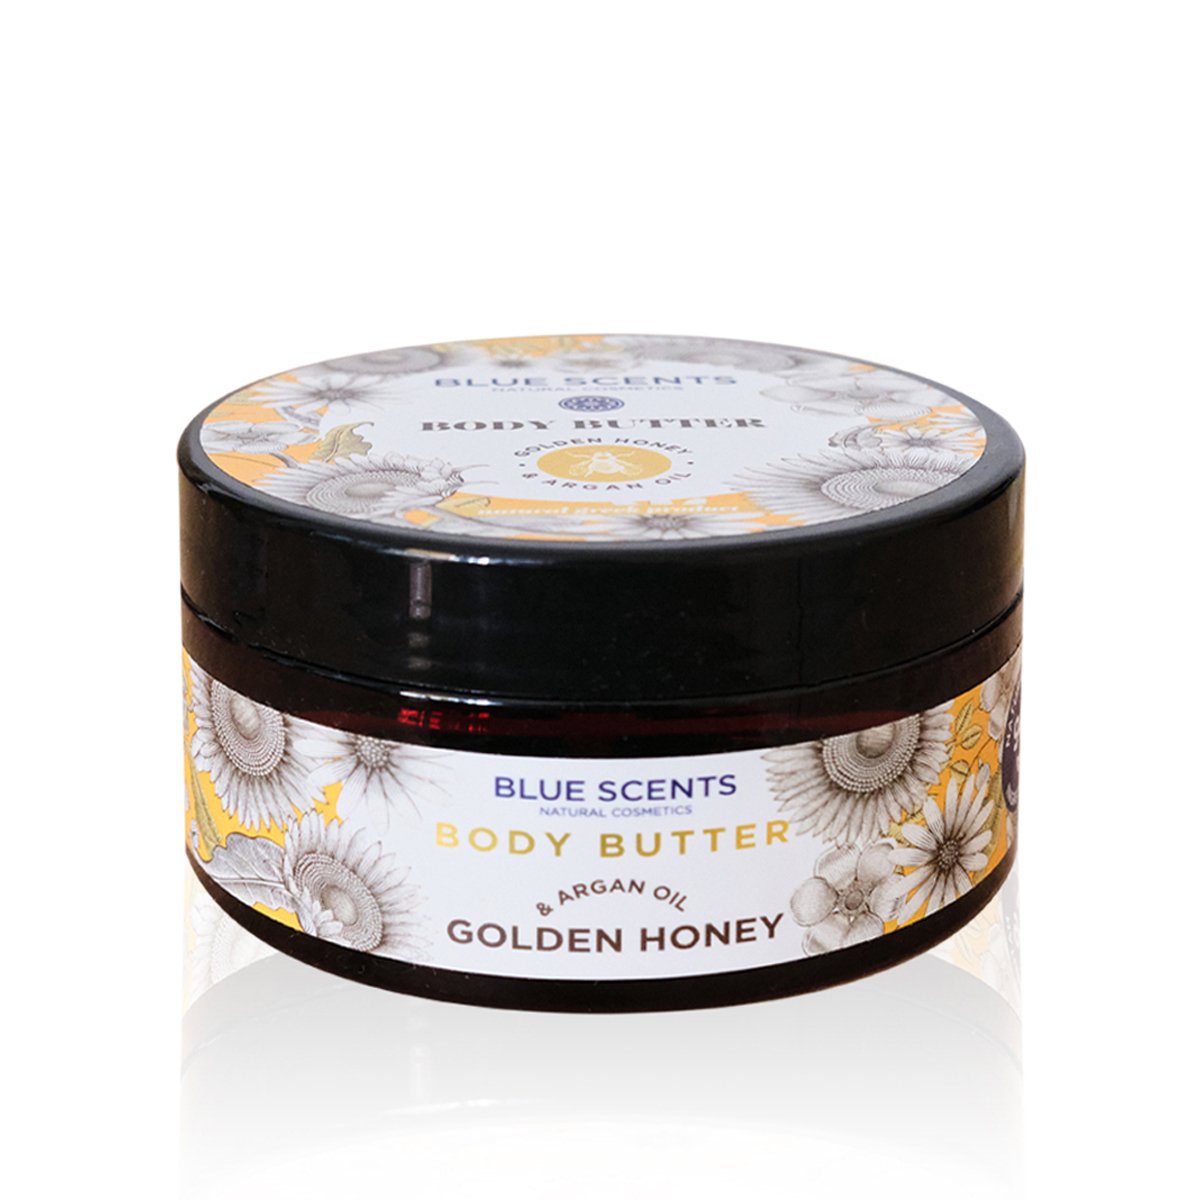 Unt de corp Golden Honey & Argan Oil, 200 ml, Blue Scents